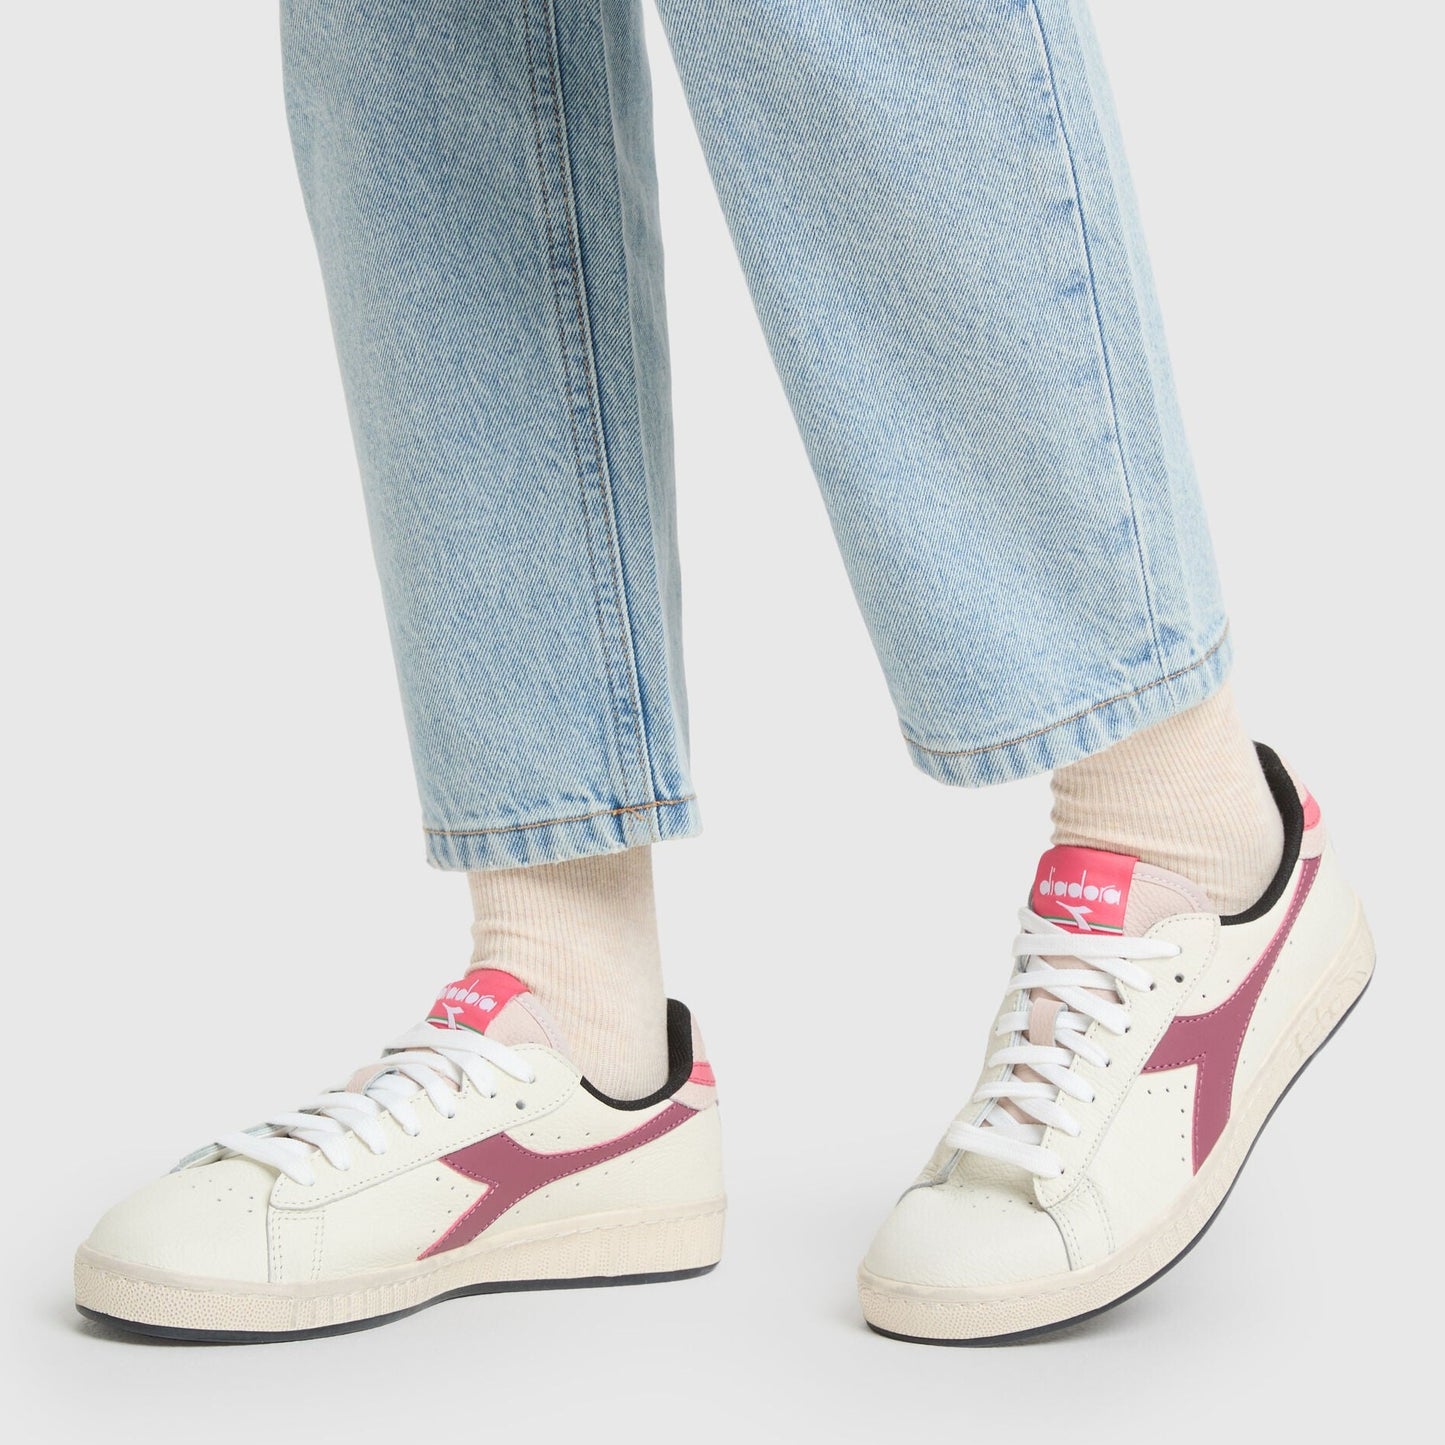 Sneakers De La Marca Diadora Para Mujer Modelo Zapatilla Game L Low Icona En Color Rosa